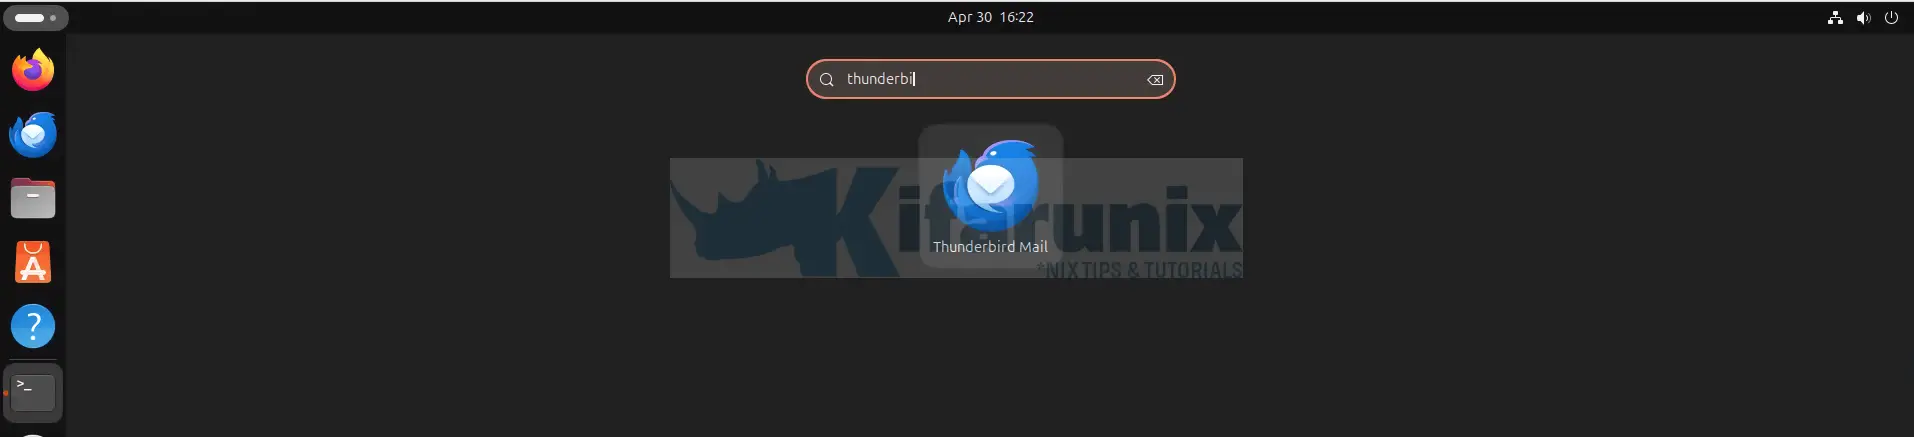 thunderbird ubuntu 24.04